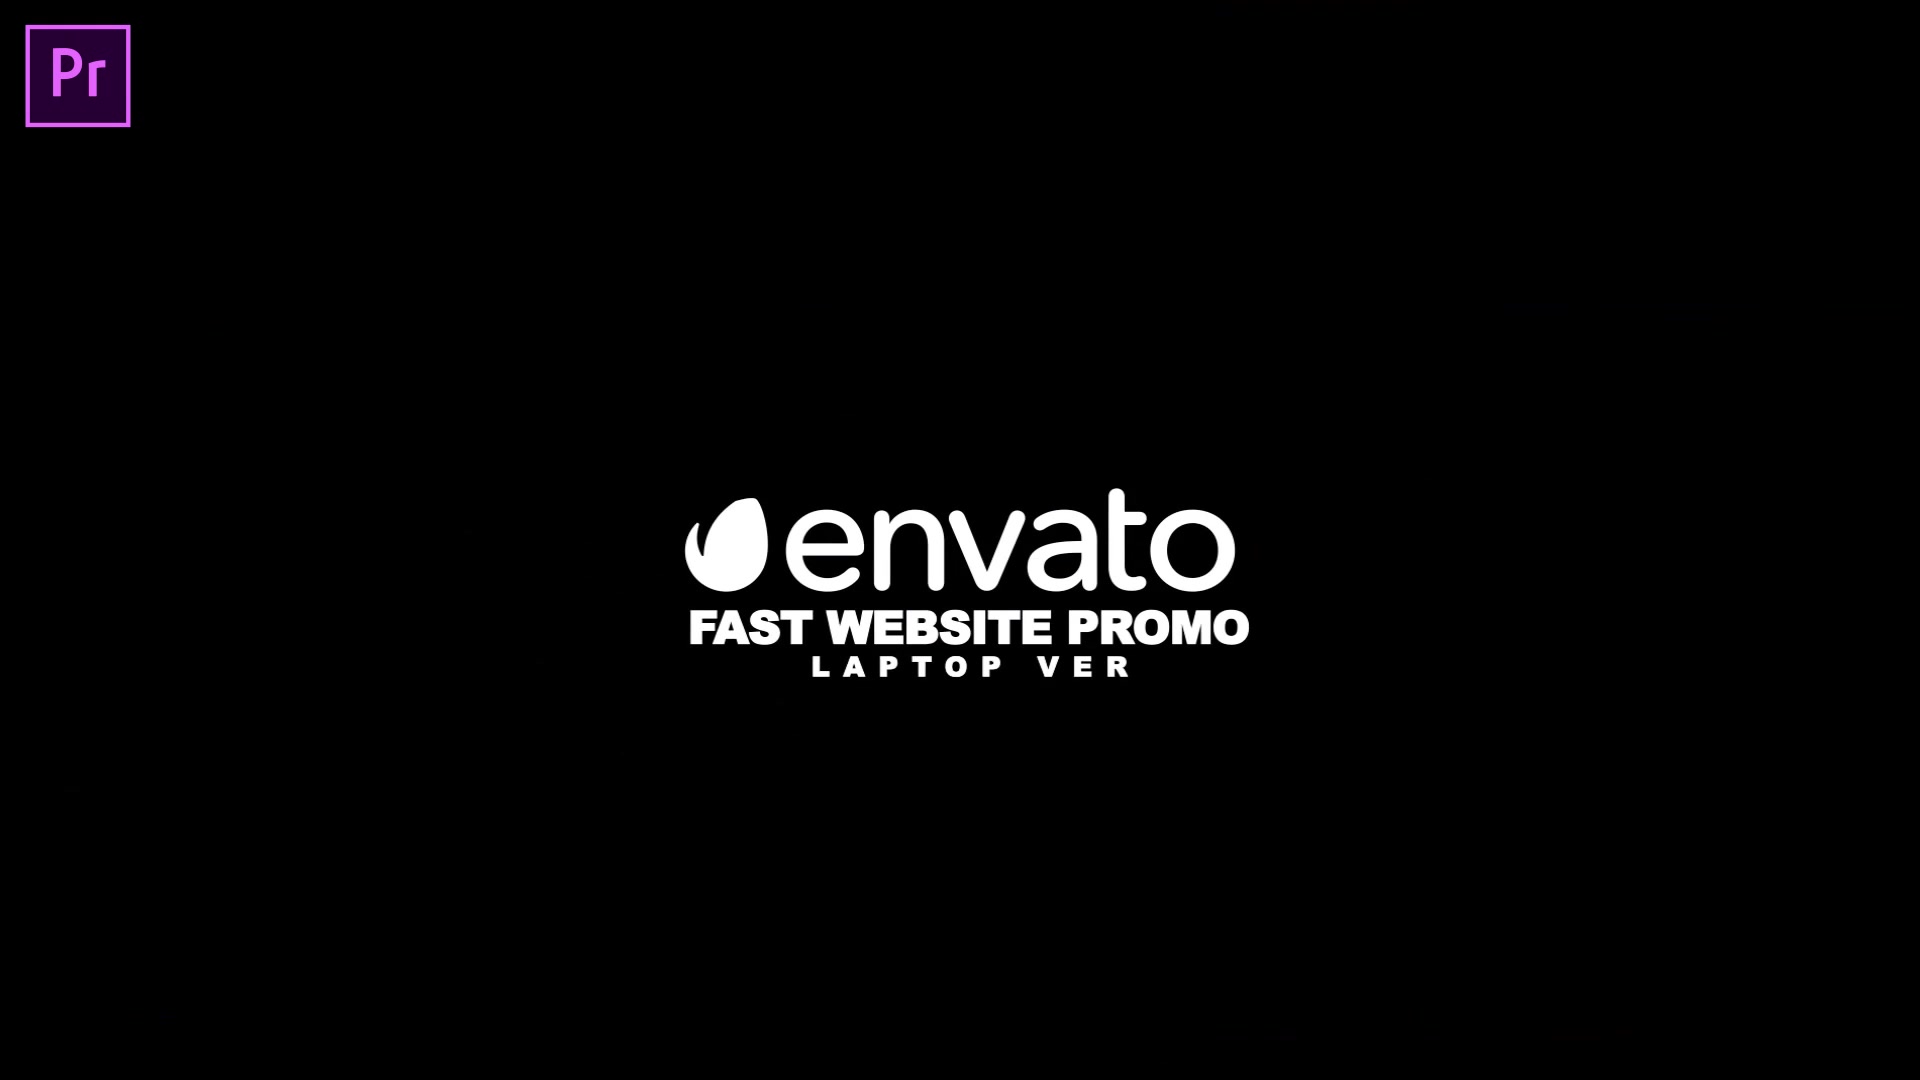 Fast Website Promo Premiere Pro version Videohive 33625280 Premiere Pro Image 4